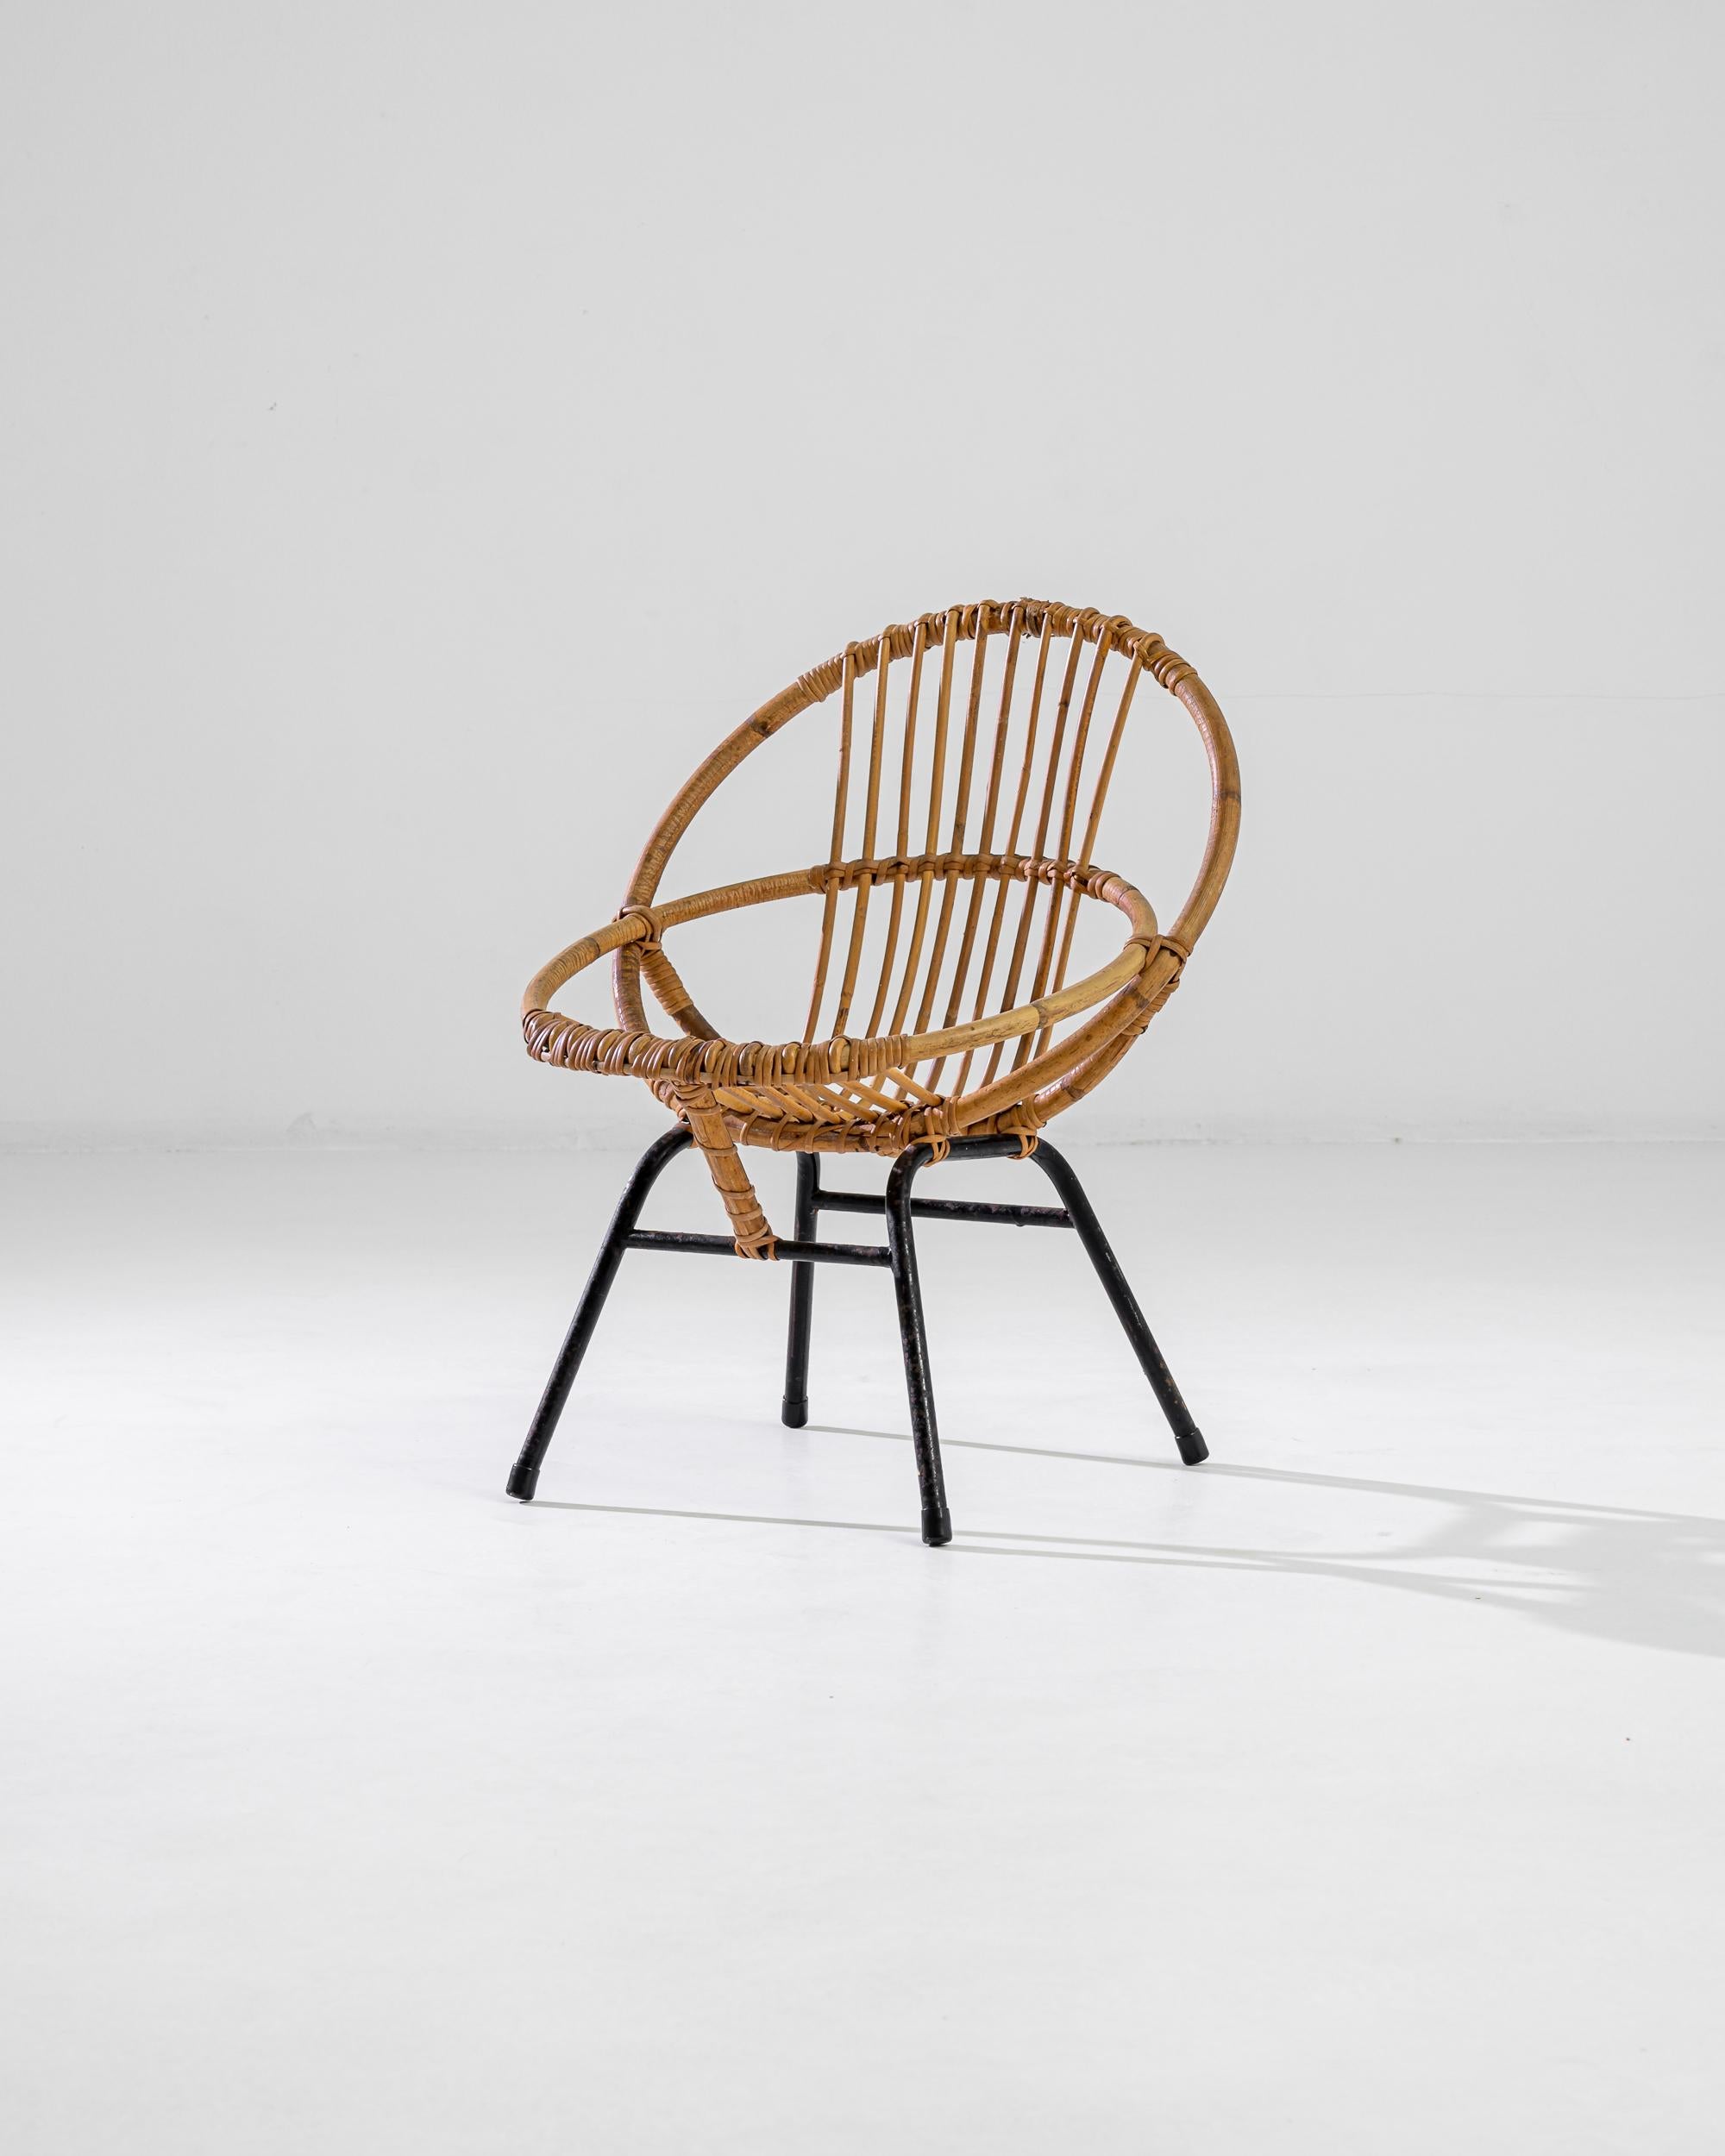 Découvrez le charme d'une élégance révolue avec notre chaise française en bambou des années 1960, une représentation étonnante de la finesse moderne du milieu du siècle. Fabriquée de manière experte en bambou naturel, cette chaise présente un